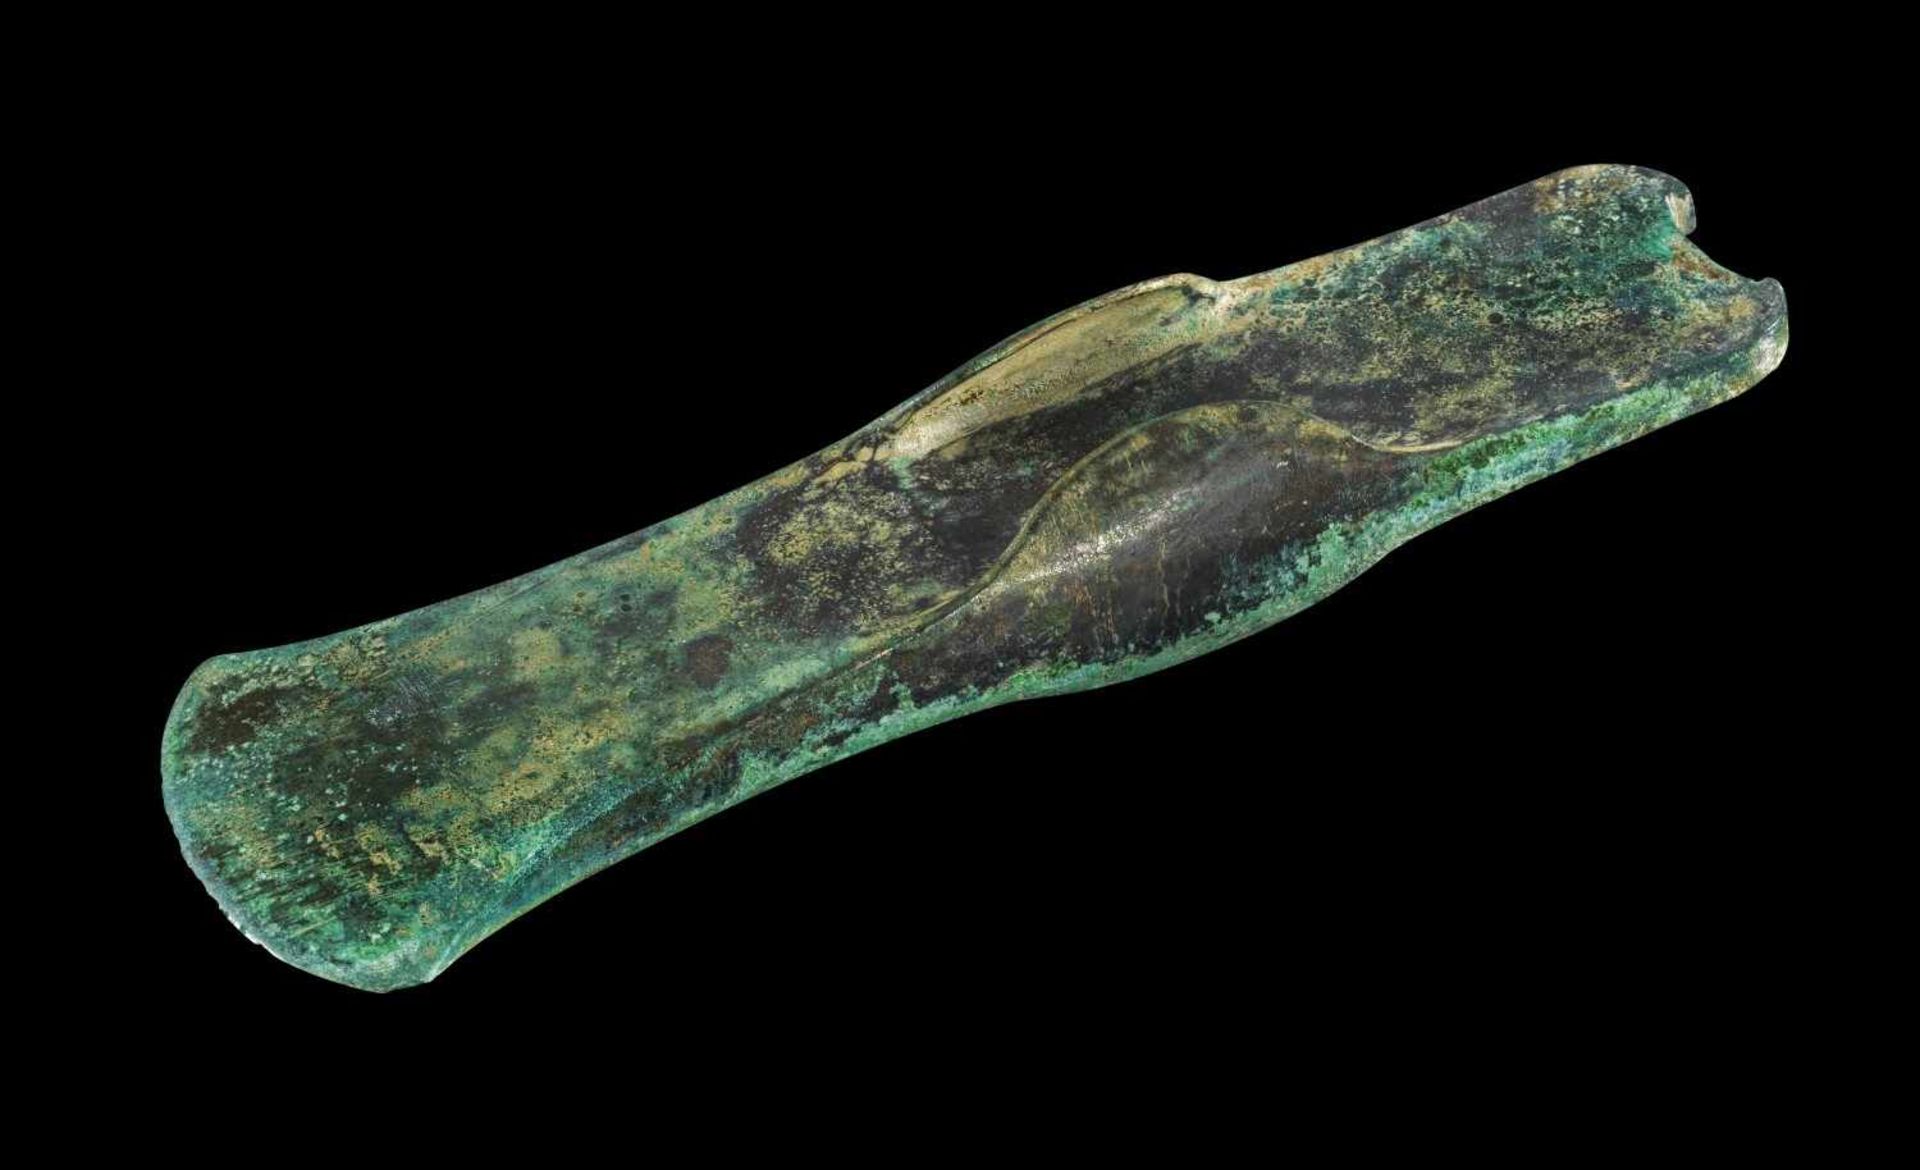 Lappenbeil. Späte Bronzezeit, 1300 - 900 v. Chr. L 20cm. Bronzeguss. Mittelständiger Typus. Die